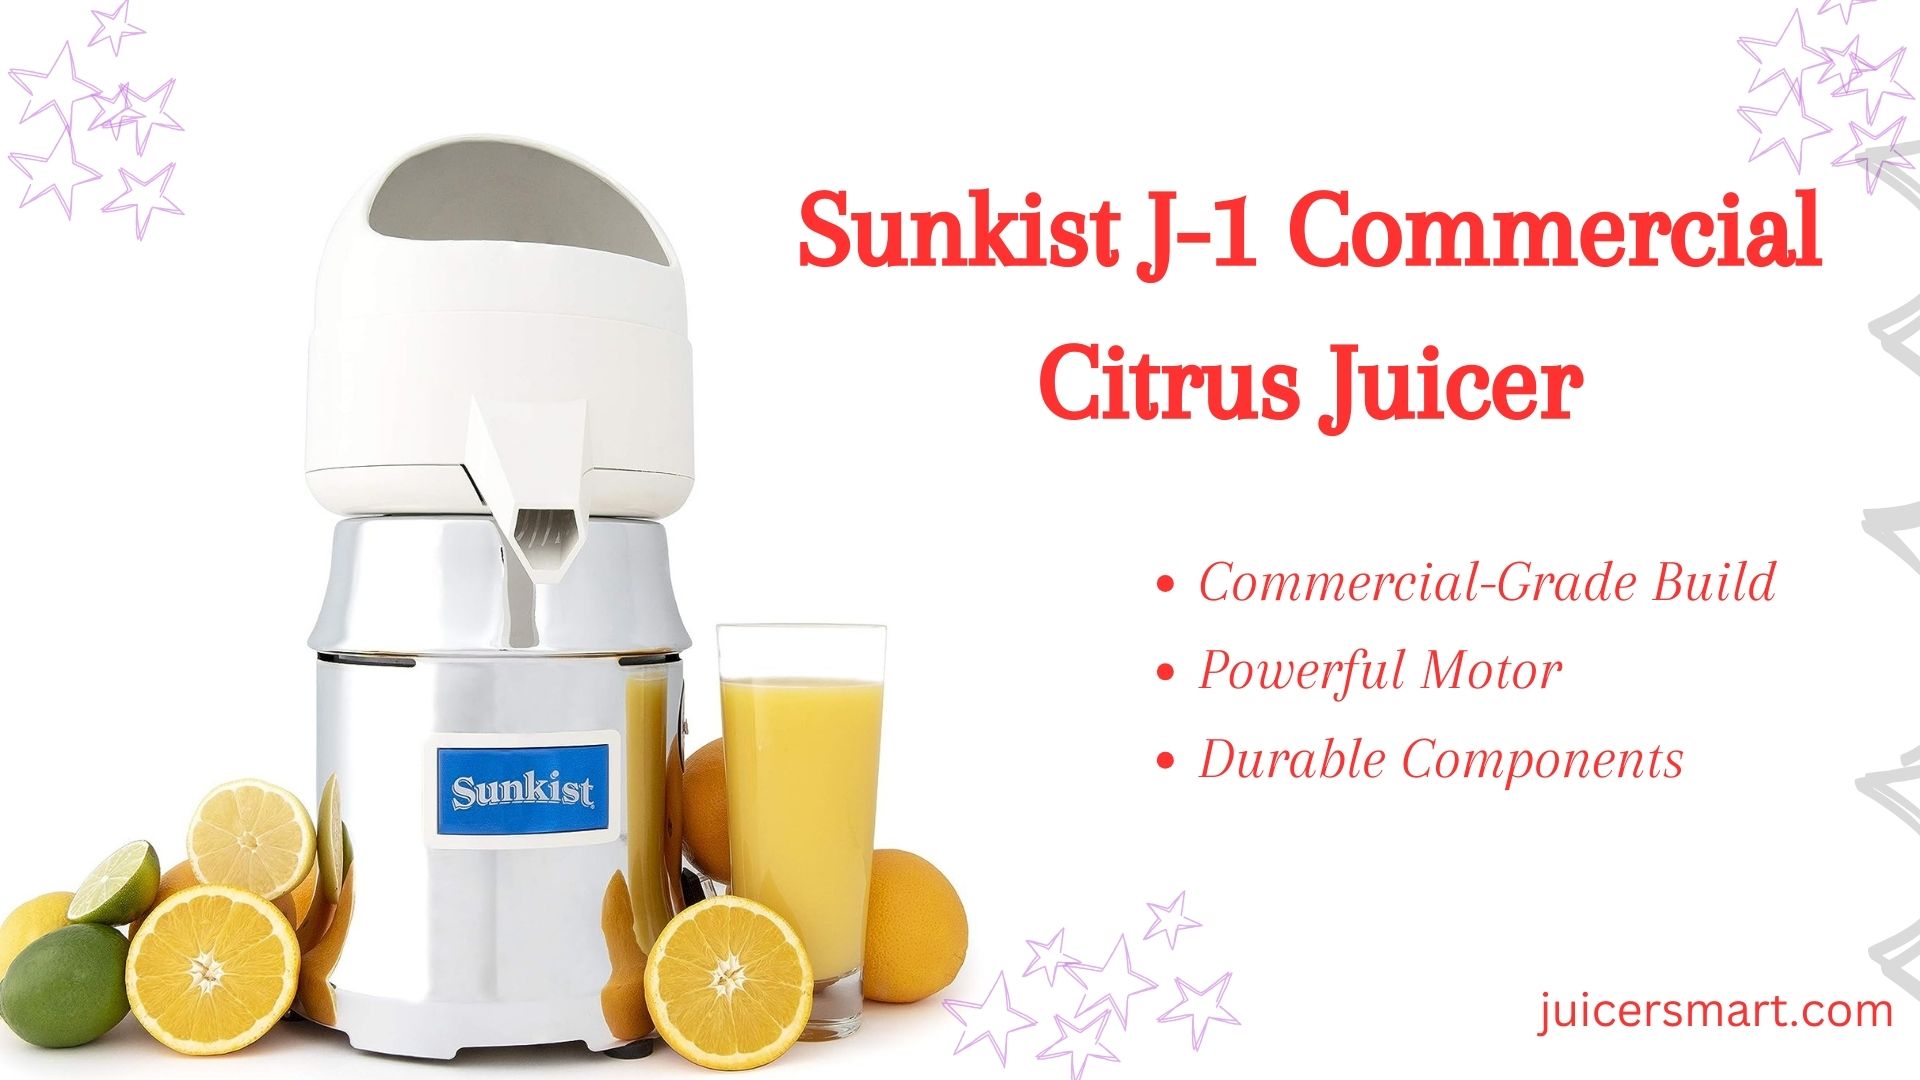 Sunkist J-1 Commercial Citrus Juicer